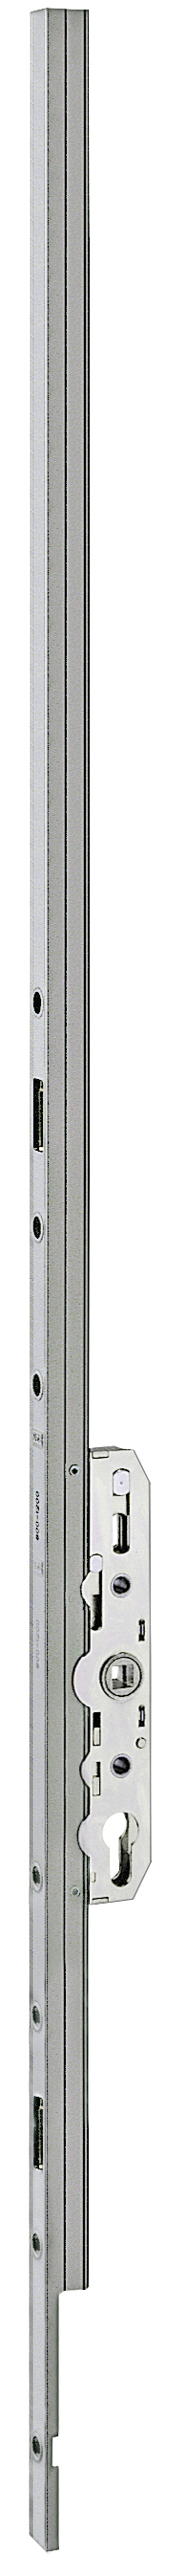 AGB -  Cremonese ALZANTE CLIMATECH per alzante scorrevole altezza maniglia fissa con chiusura a perni - gr / dim. 05 - entrata 27,5 - alt. man. 1000 - lbb/hbb 2401-2750